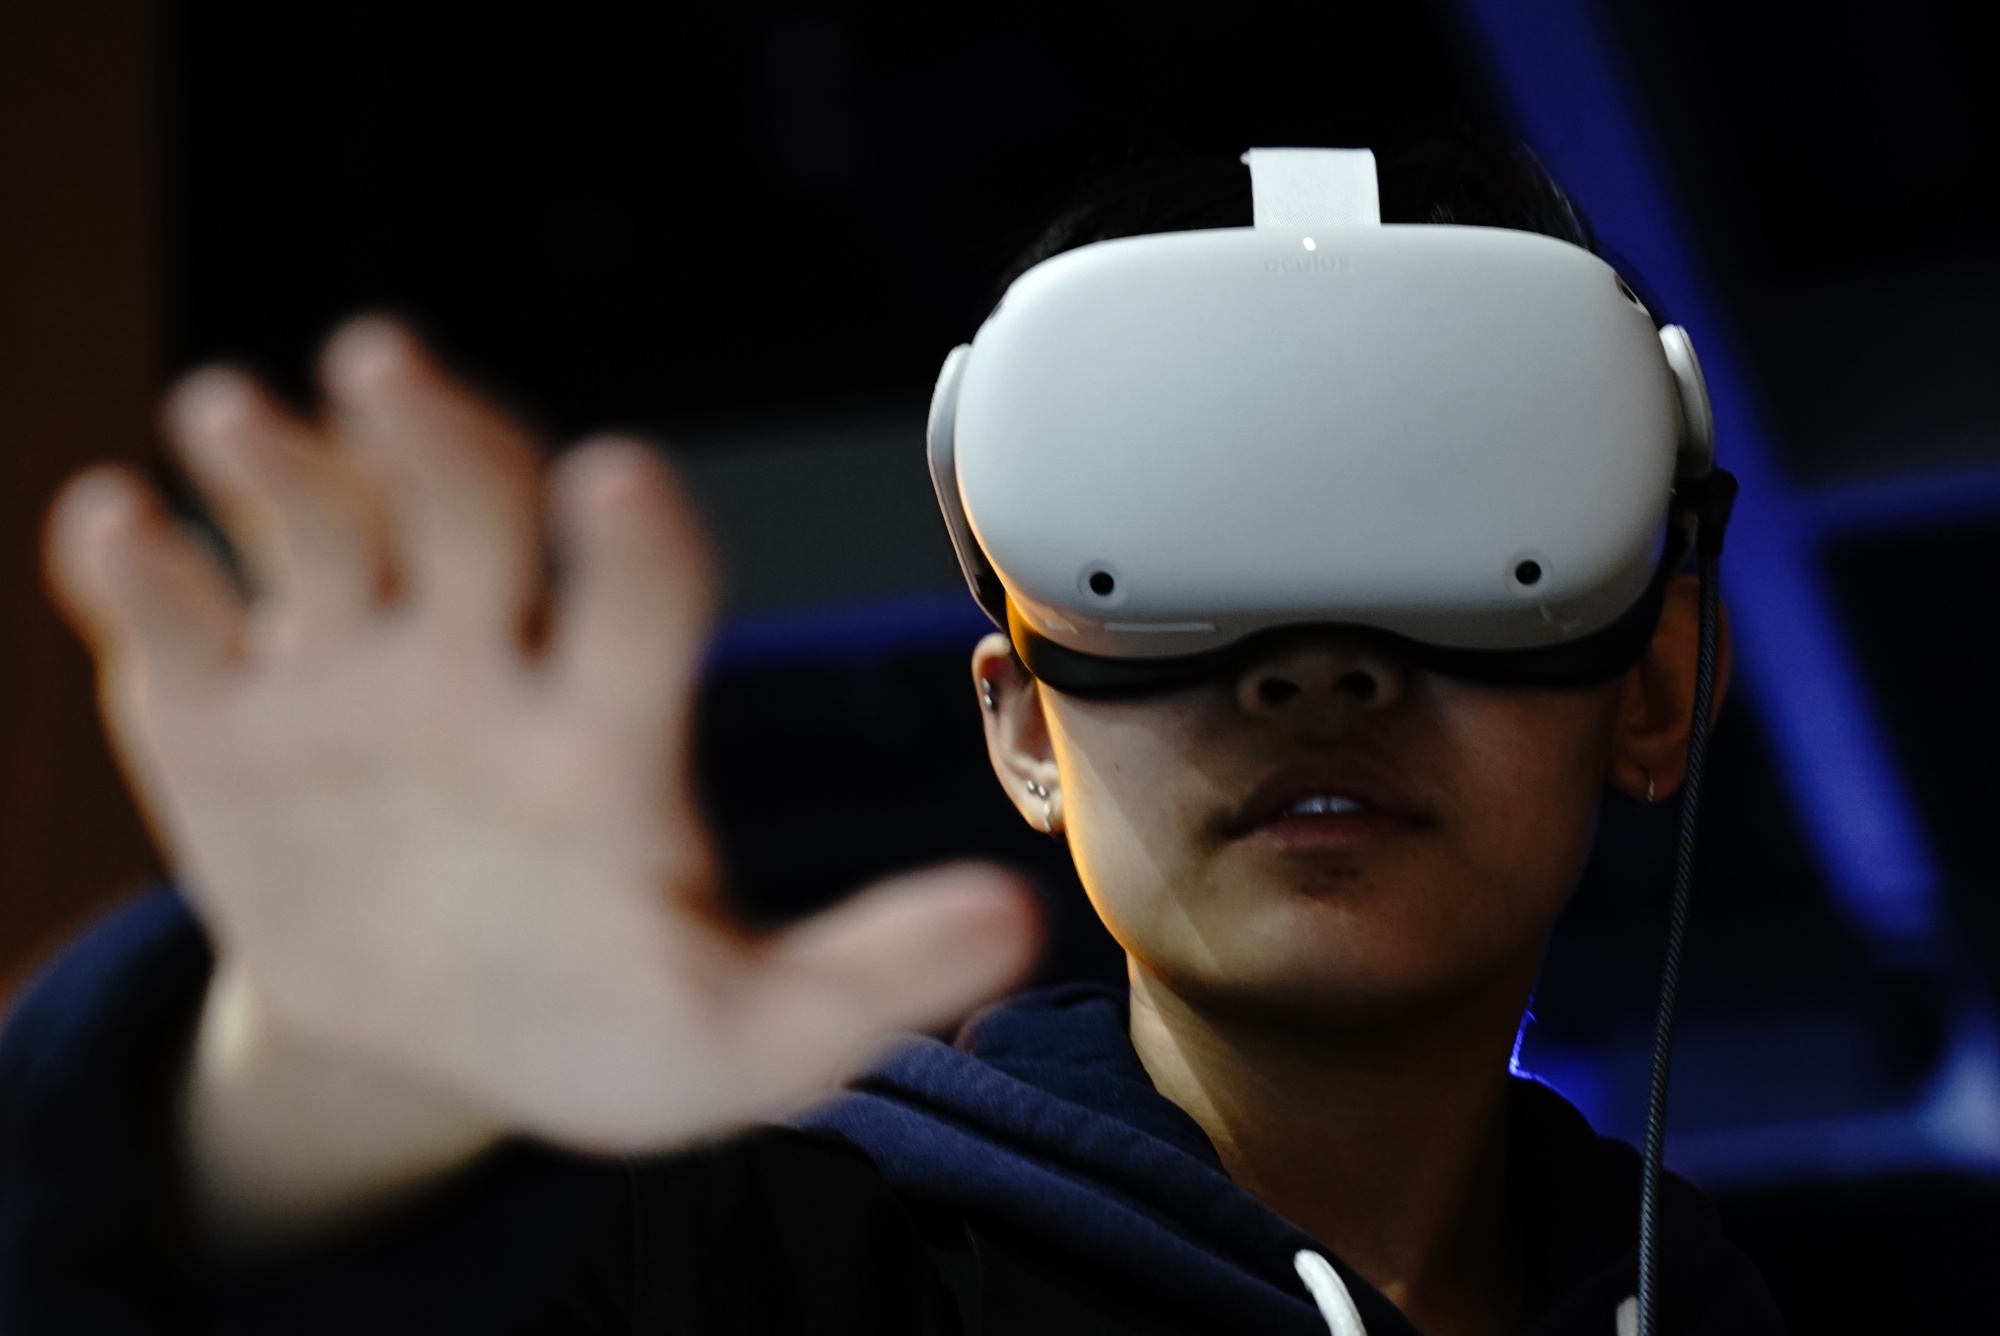 图片展示一位戴着虚拟现实头盔的人，伸出手掌，似乎在体验或操作虚拟现实中的内容。背景模糊，聚焦于人物。